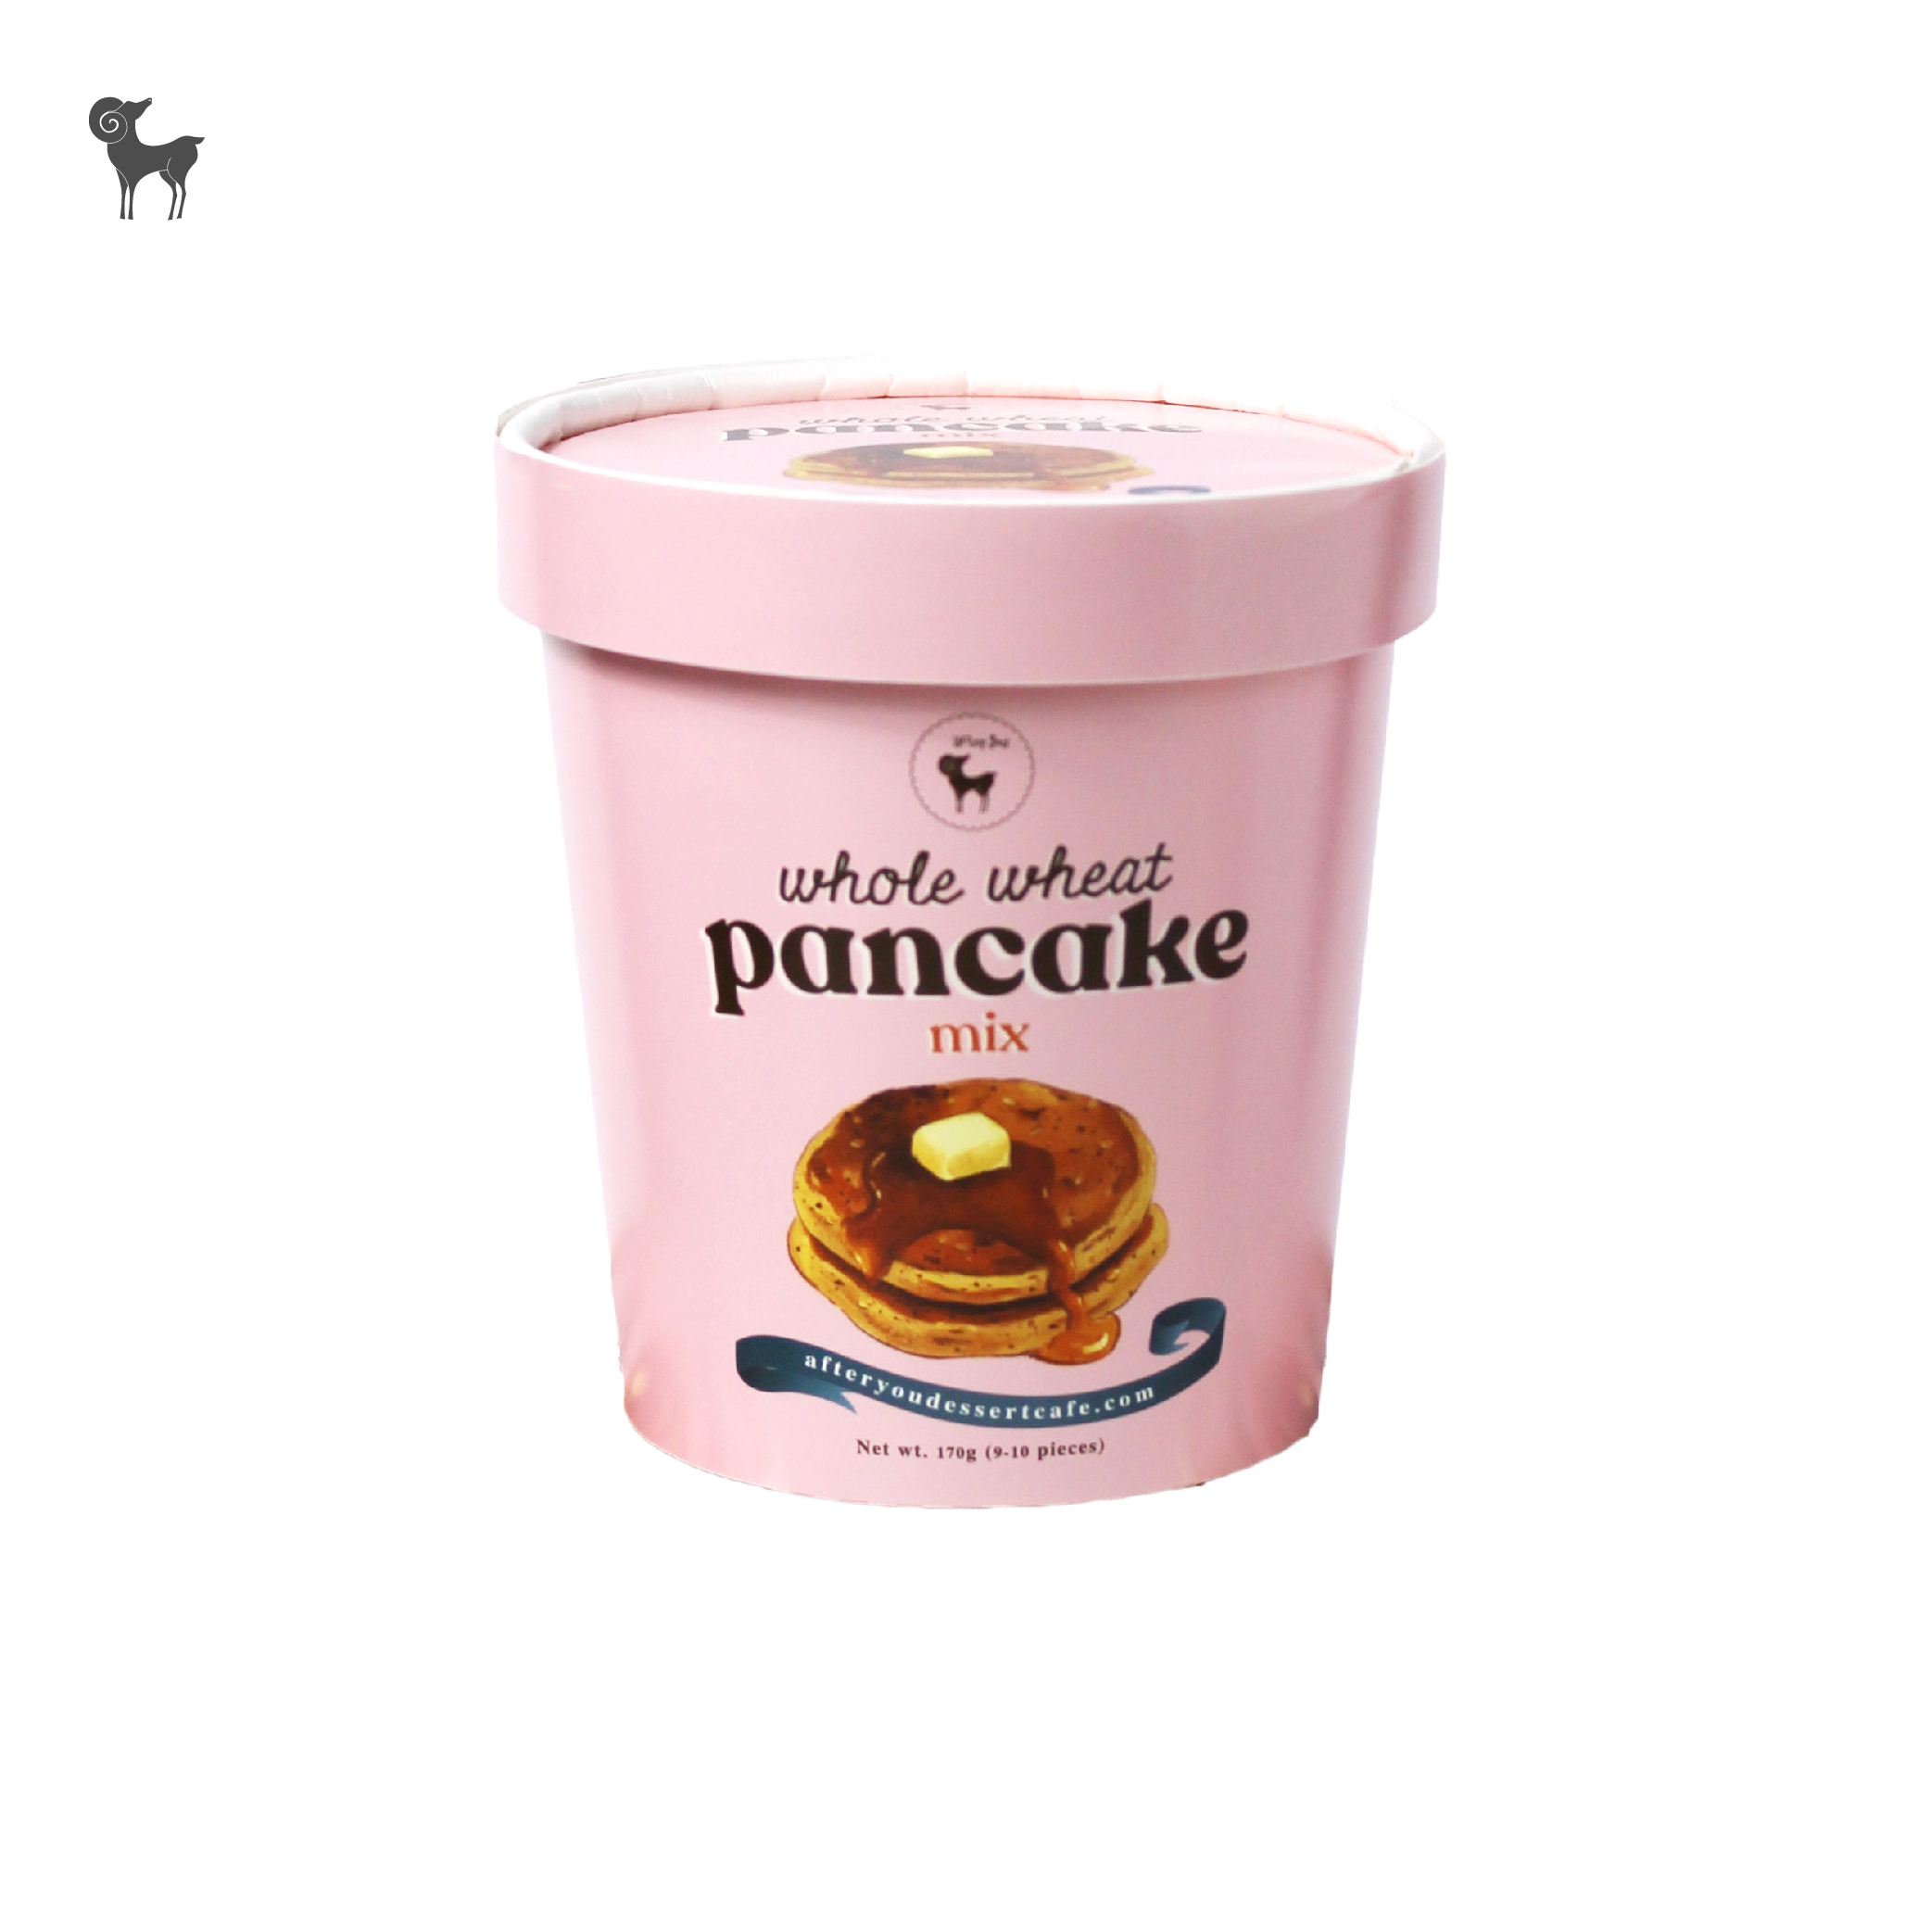 After you pancake mix whole wheat - แป้งแพนเค้กโฮลวีทสำเร็จรูป (03-PO005)